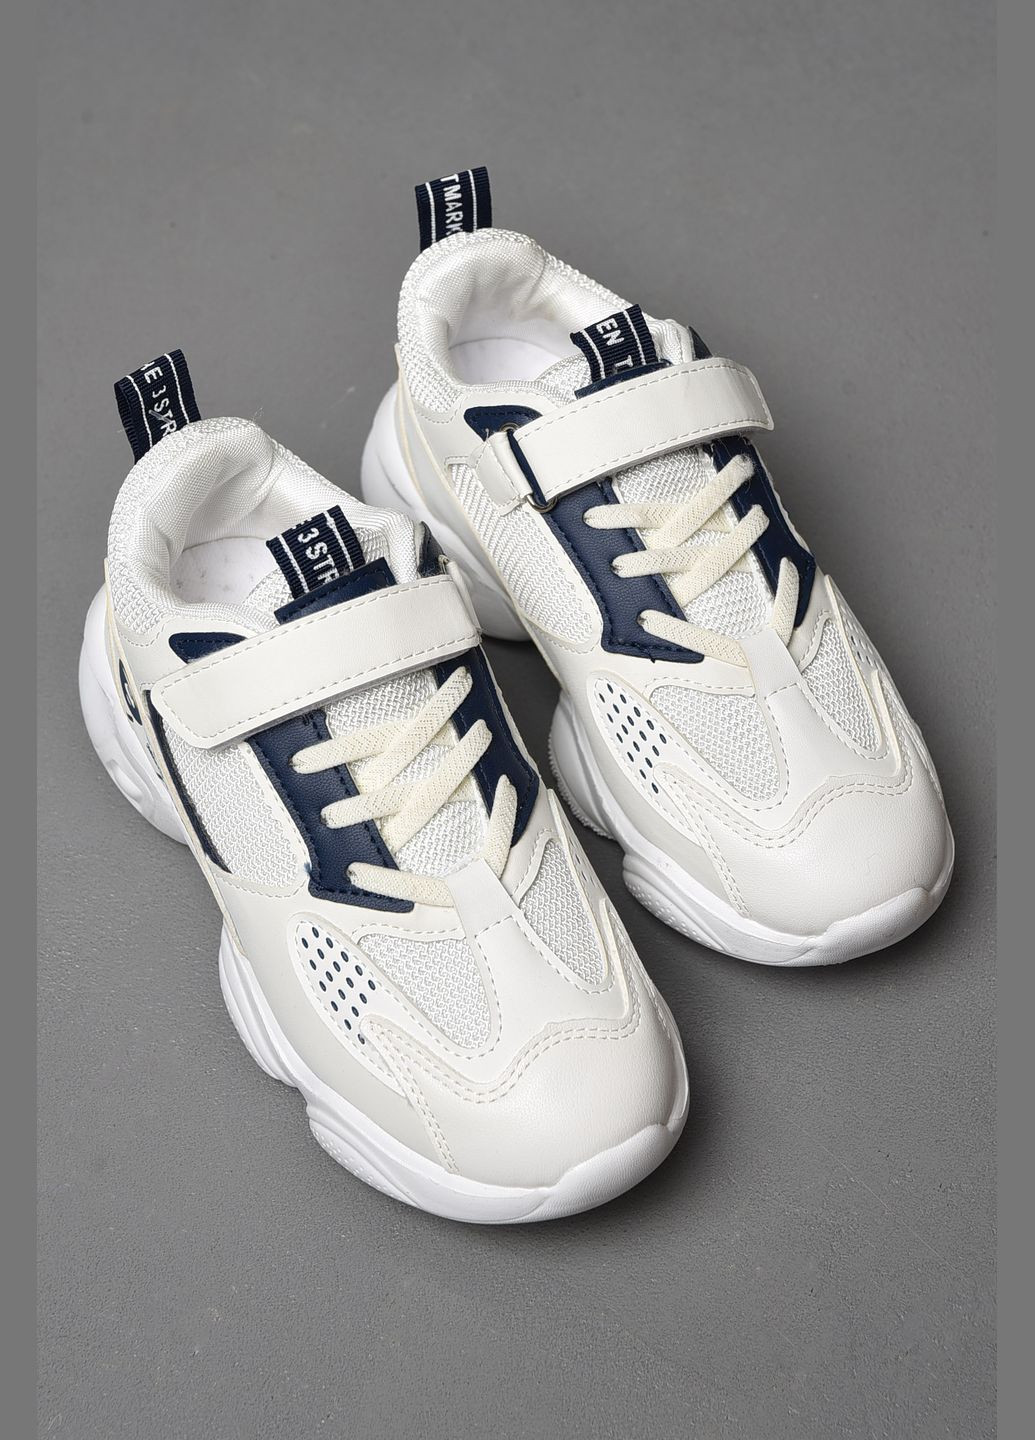 Белые демисезонные кроссовки для девочки белого цвета Let's Shop